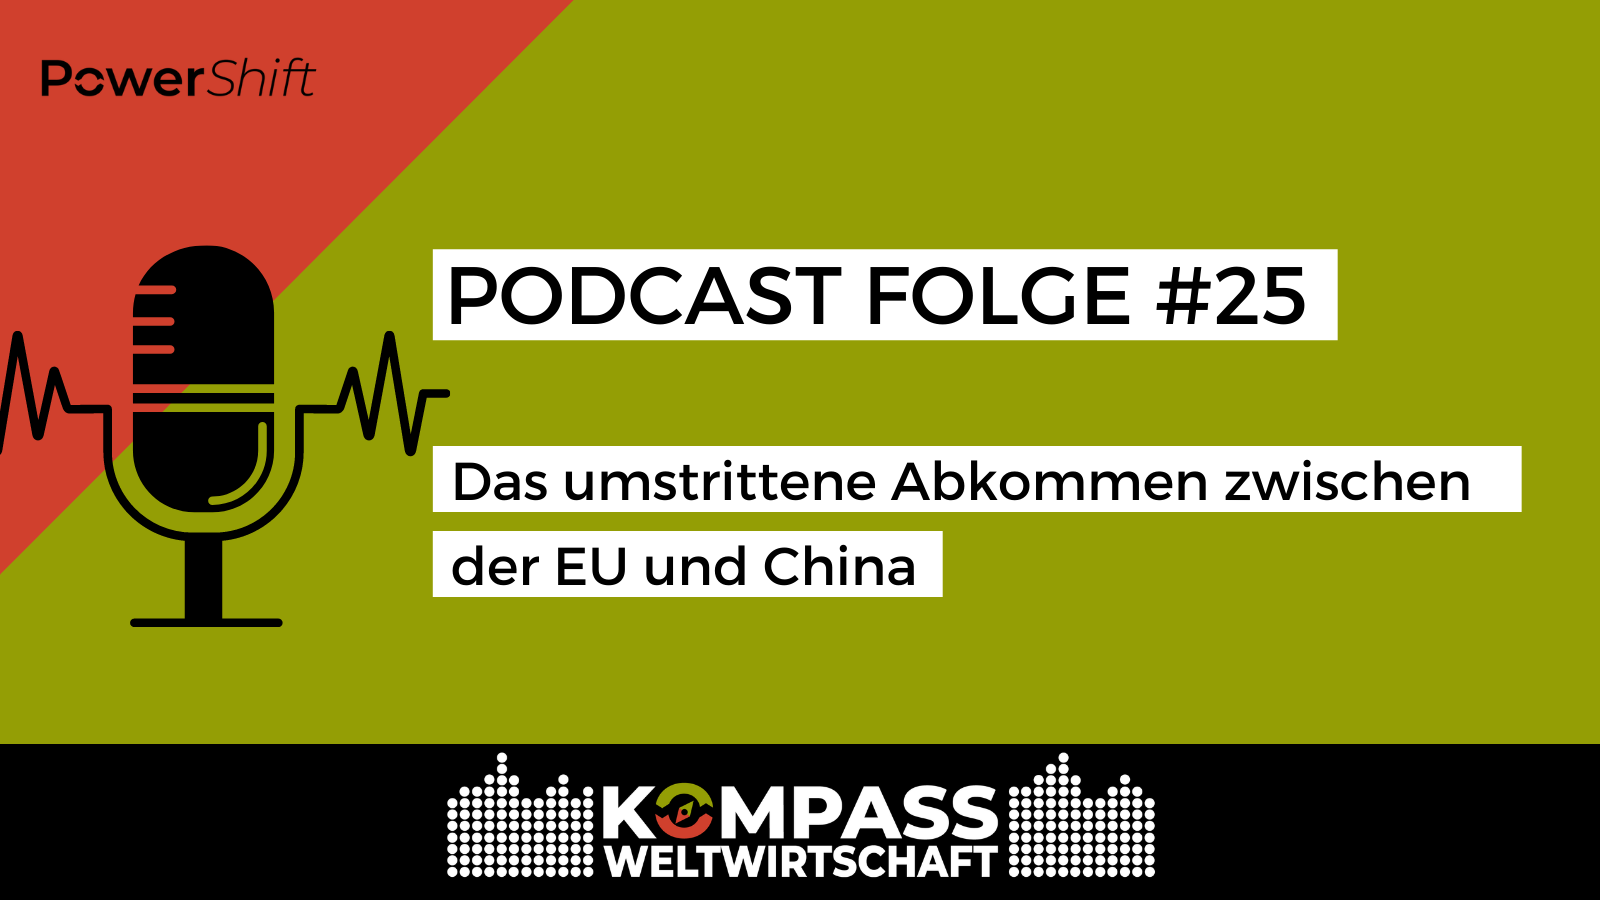 Podcastfolge 25, Das umstrittene Abkommen zwischen der EU und China